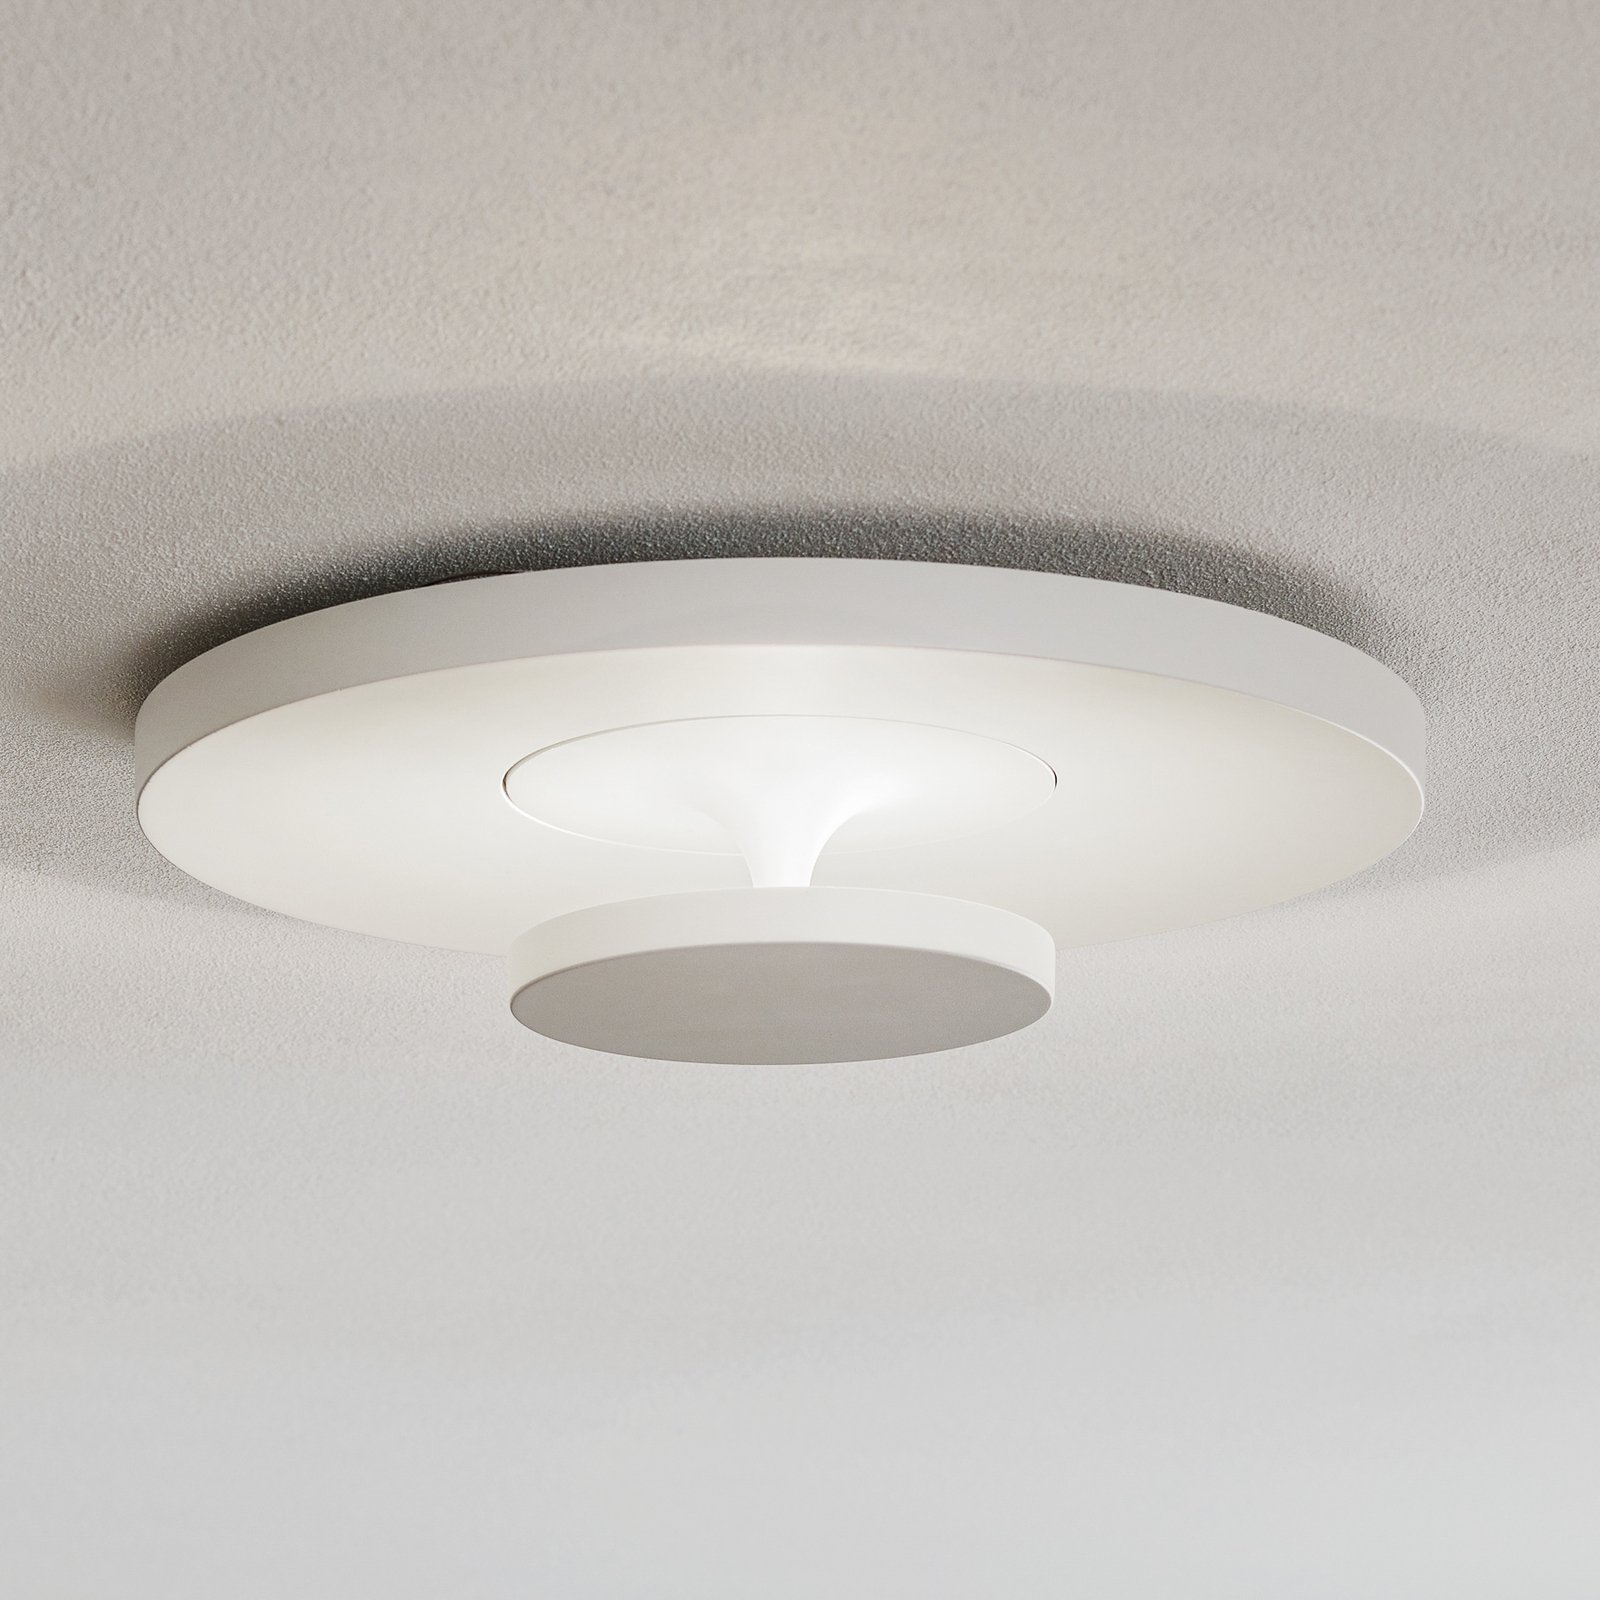 Indirectly illuminating Sunny LED ceiling light